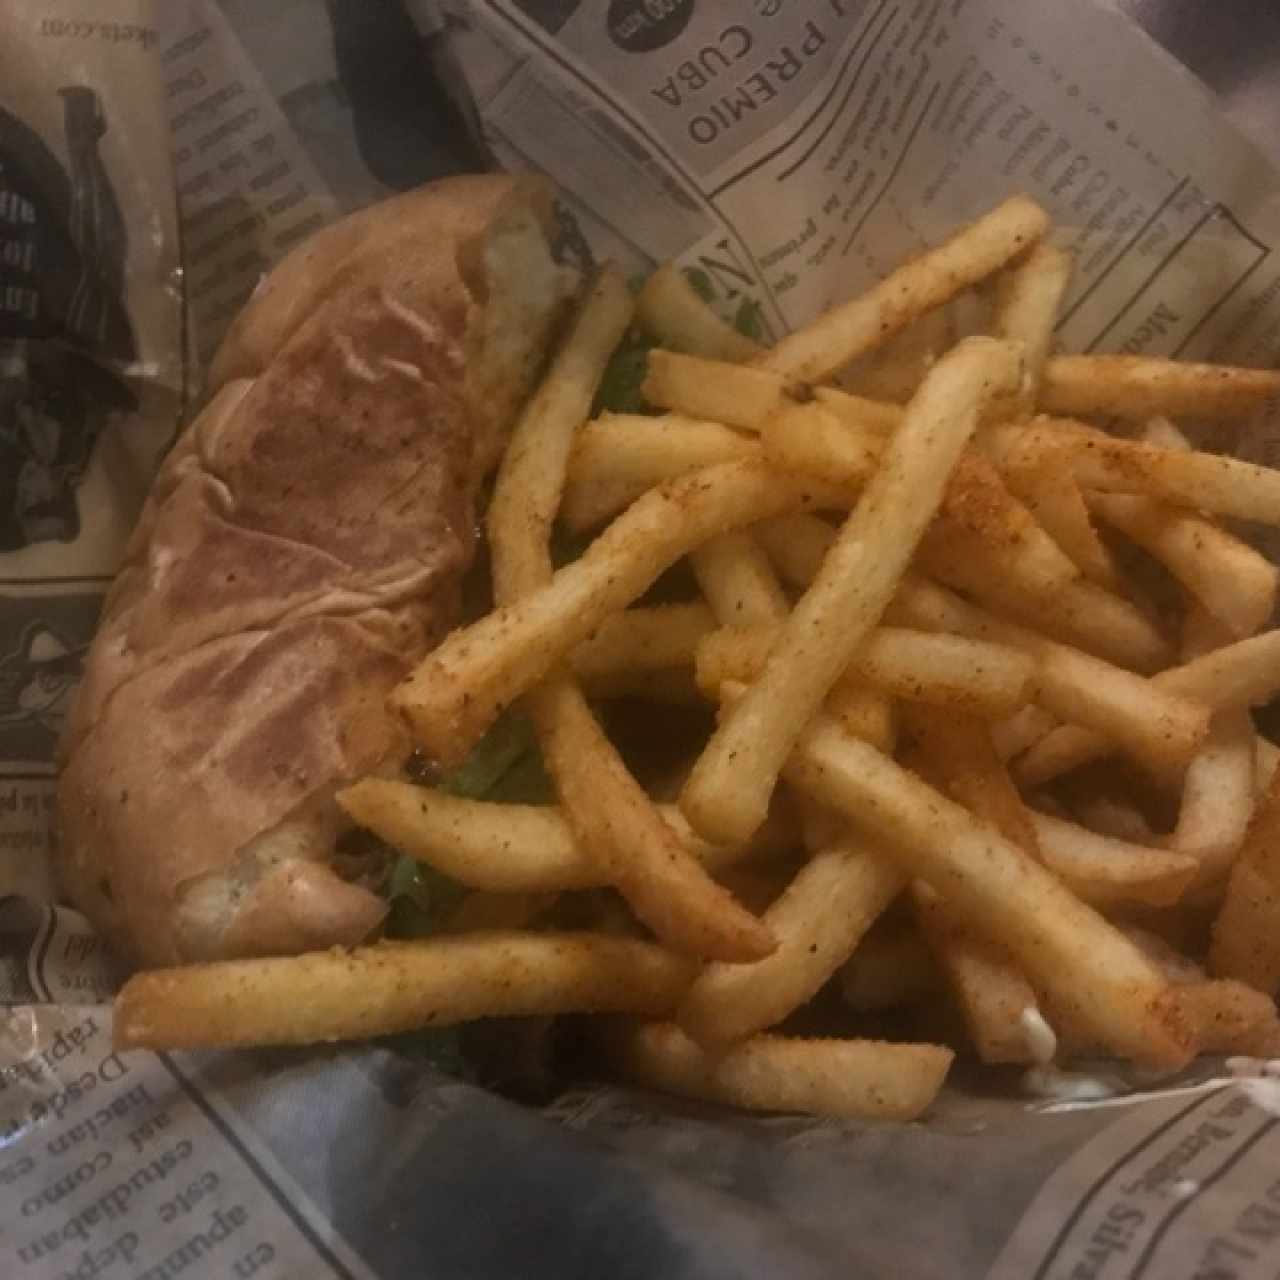 flaca sexy burger